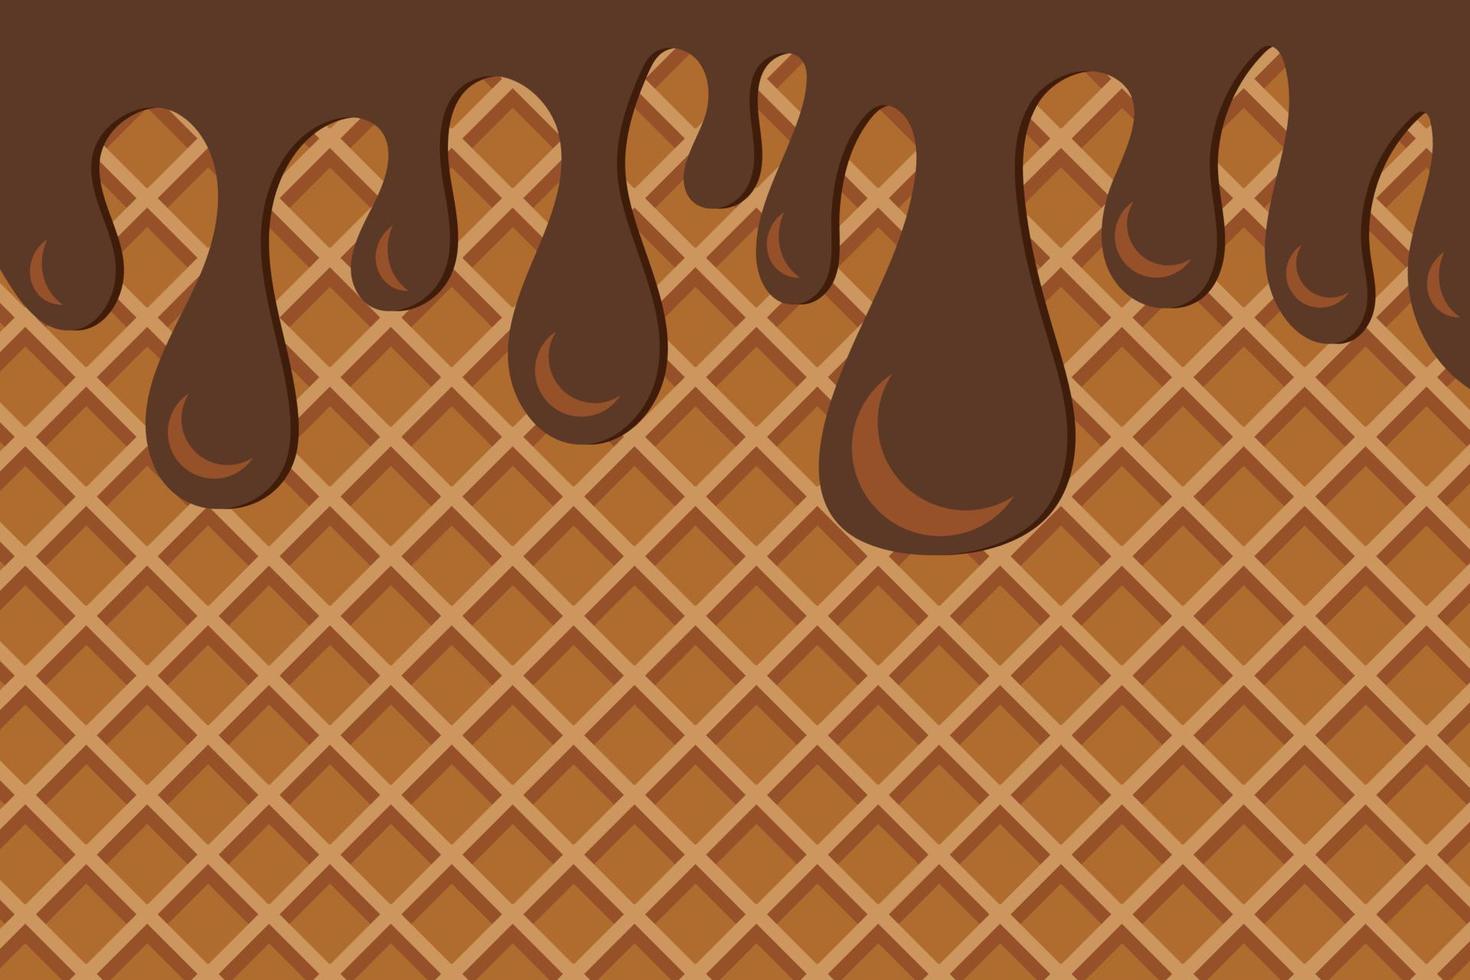 World Chocolate Day Tasty Dessert Background vector